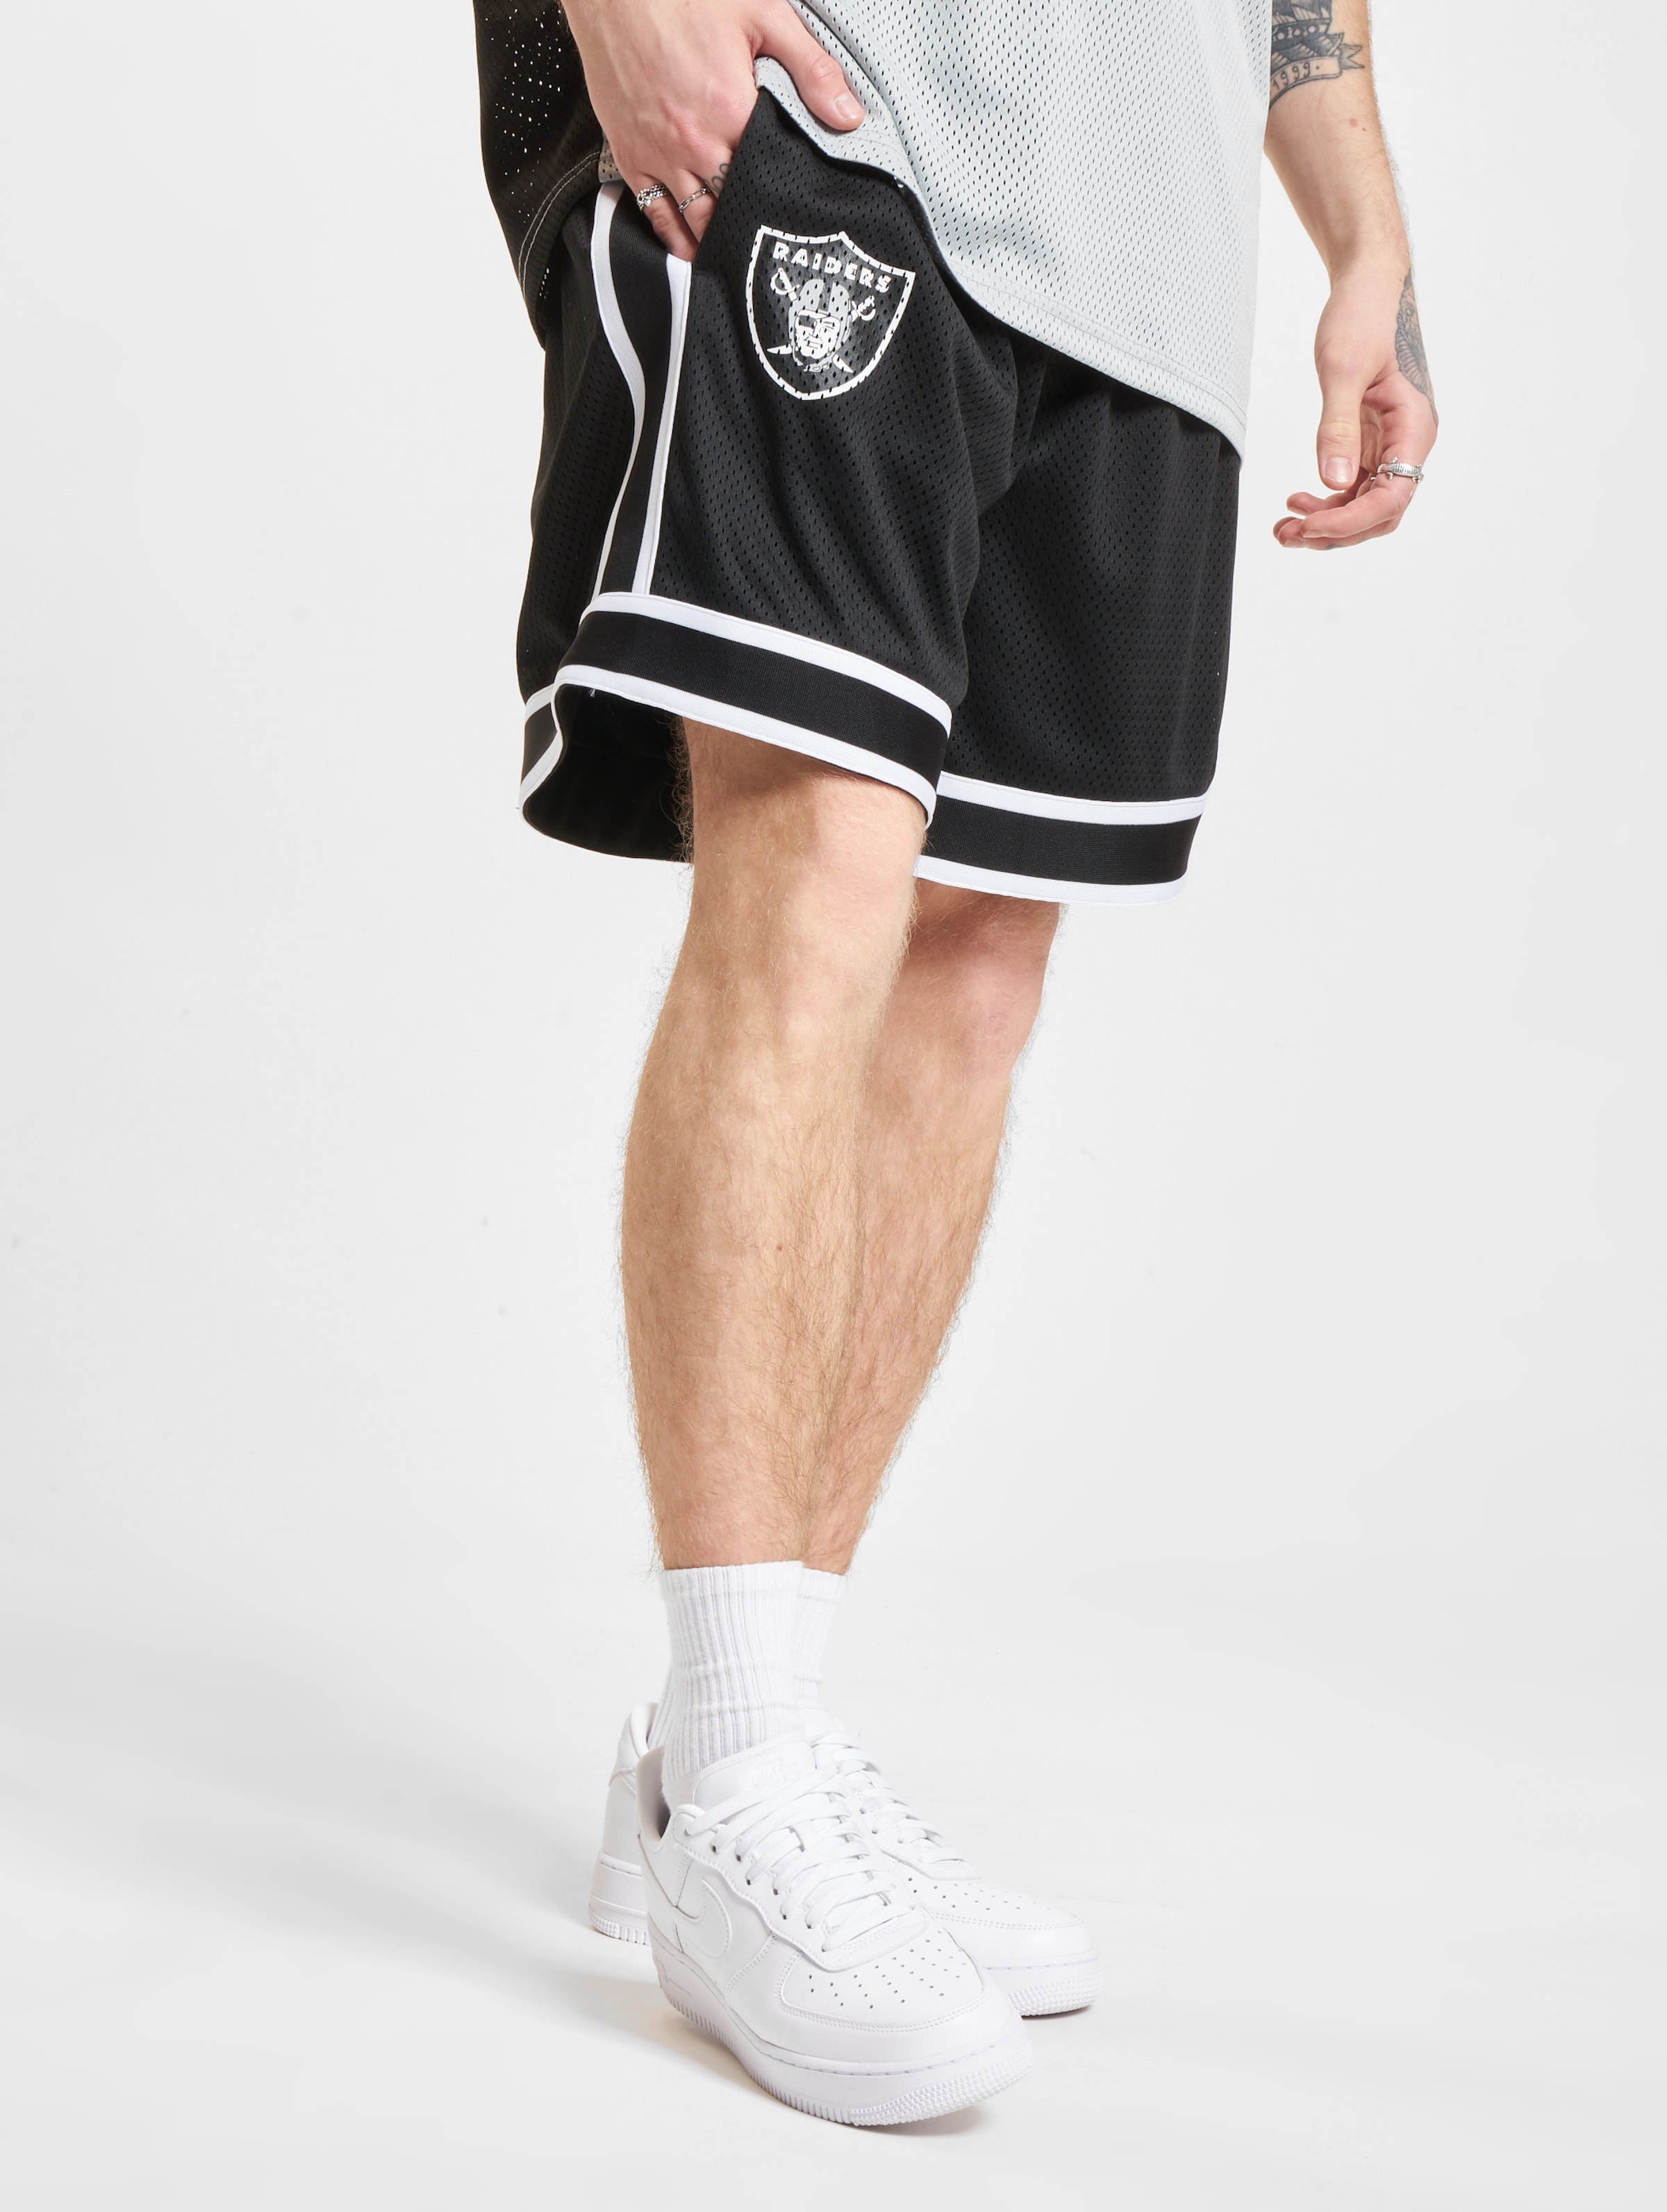 New Era Las Vegas Raiders NFL Colour Block Shorts Männer,Unisex op kleur zwart, Maat S